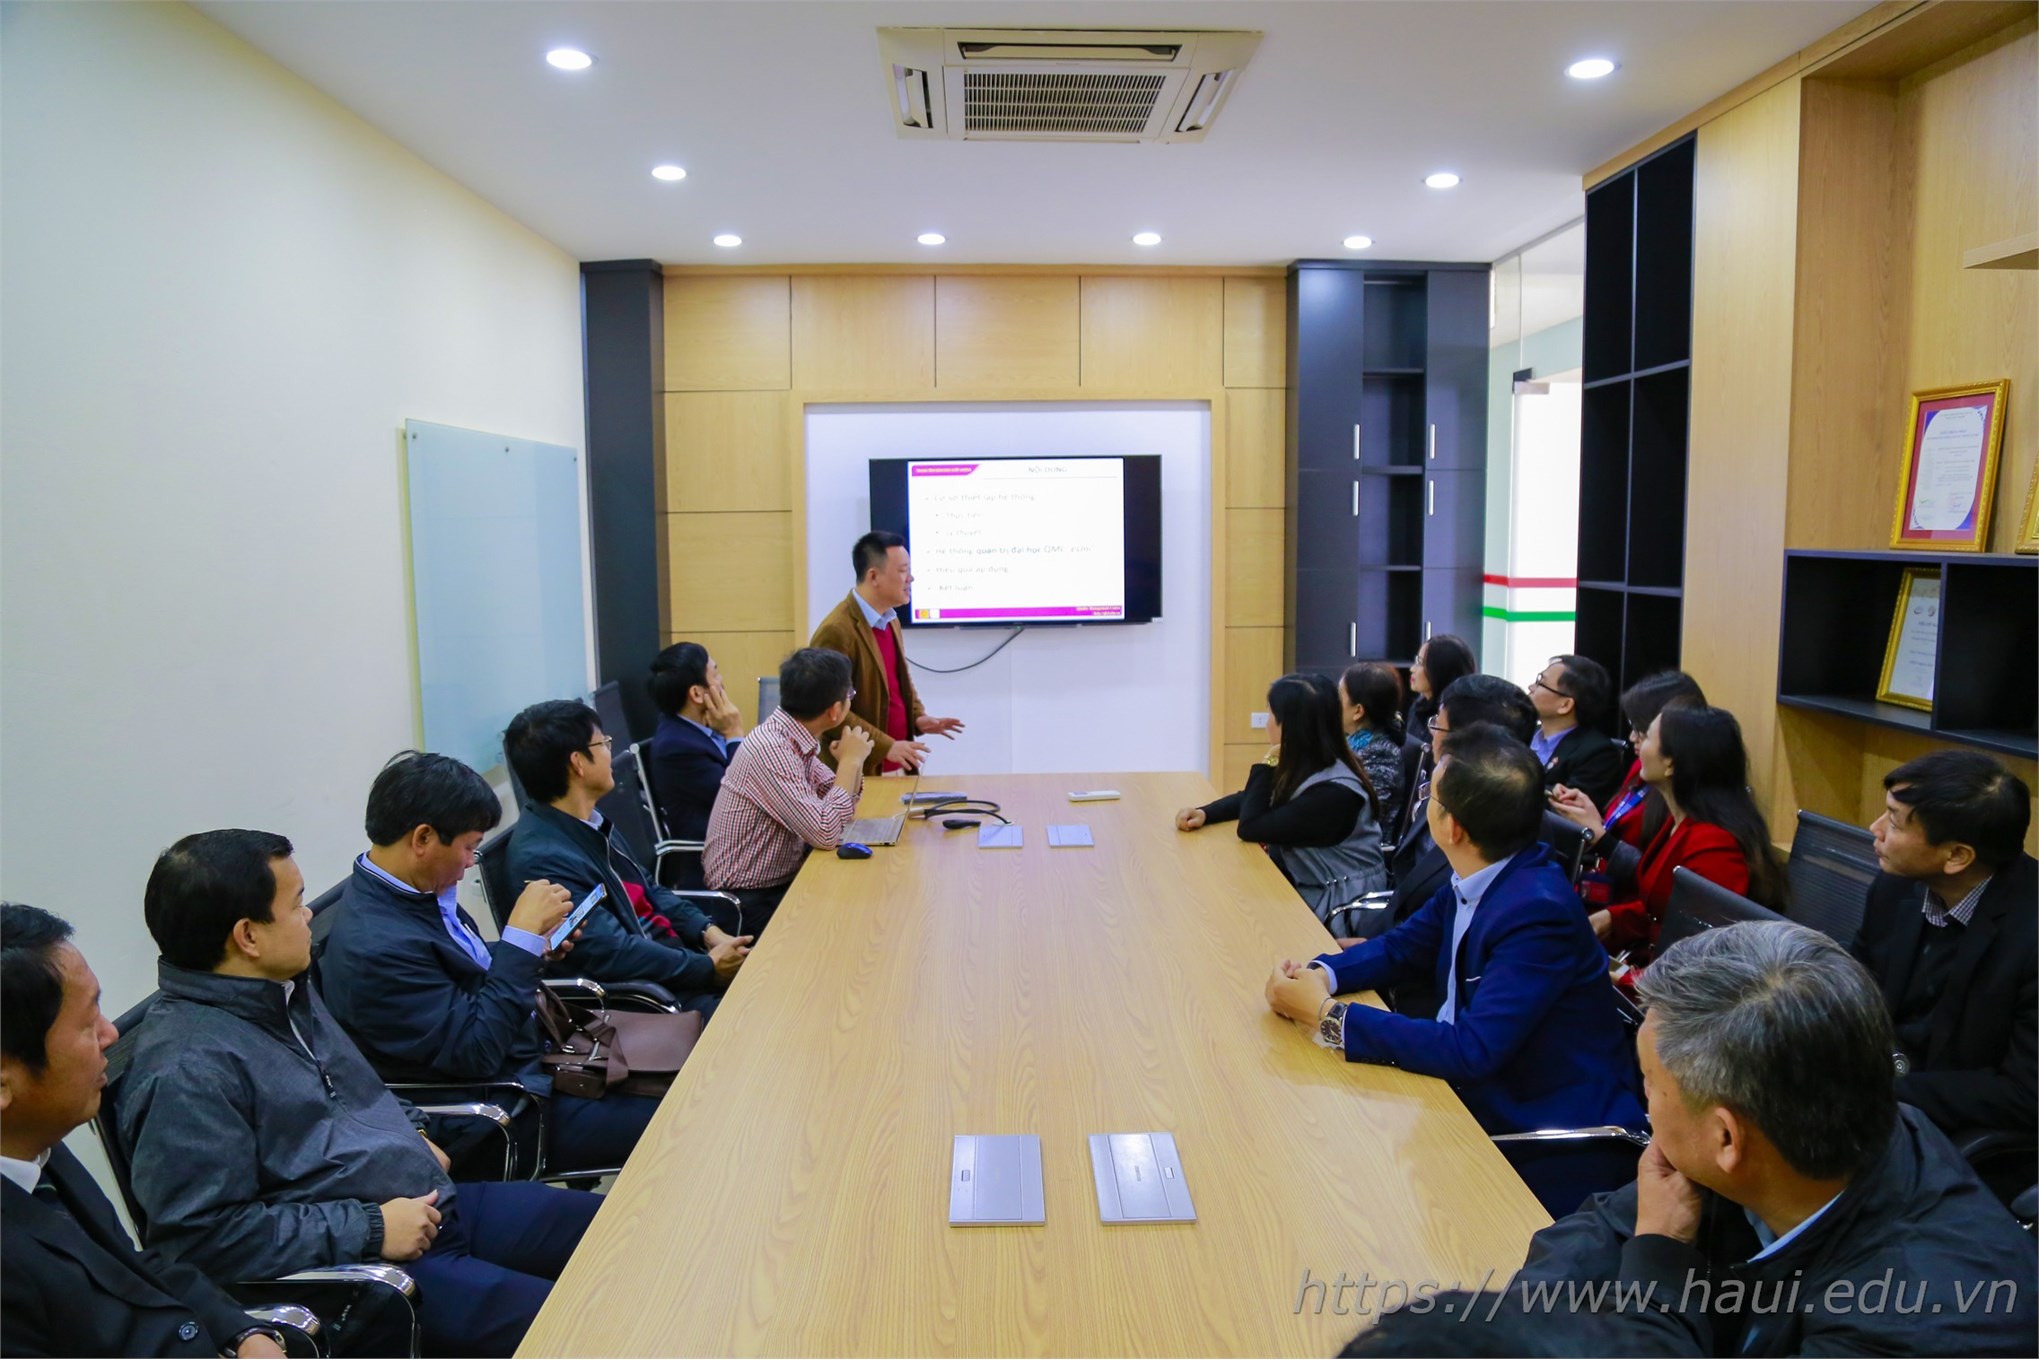 Đại học Công nghiệp Hà Nội chuyển giao chương trình đào tạo tiếng Anh nghề nghiệp cho 27 trường đại học, cao đẳng